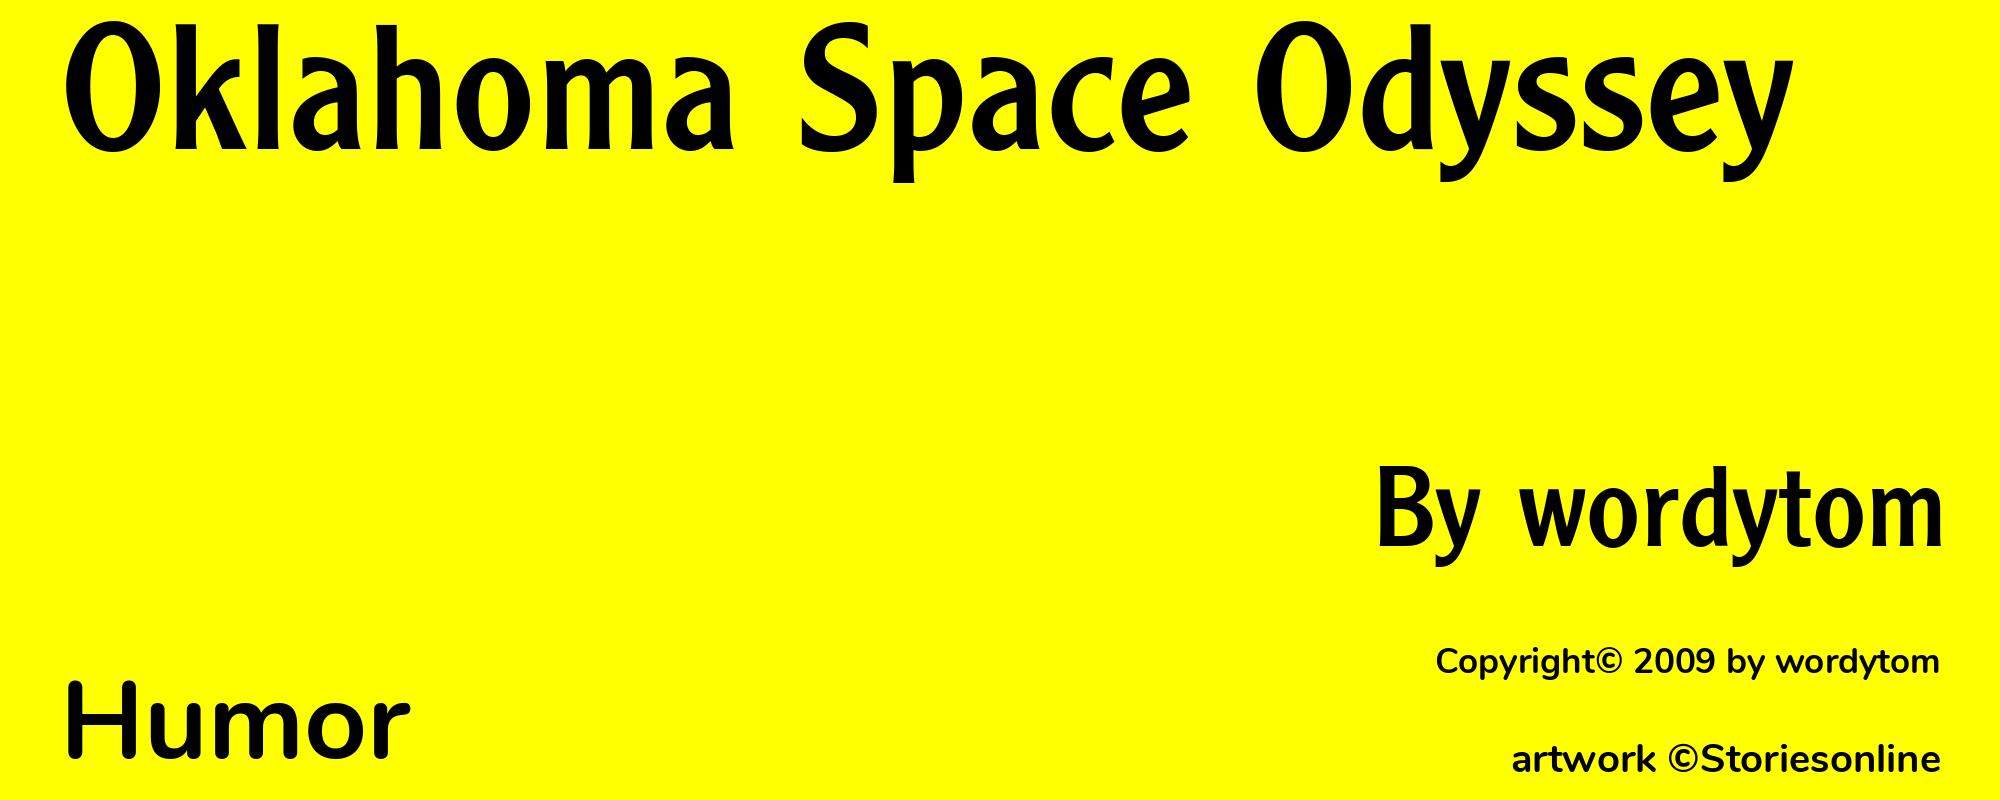 Oklahoma Space Odyssey - Cover